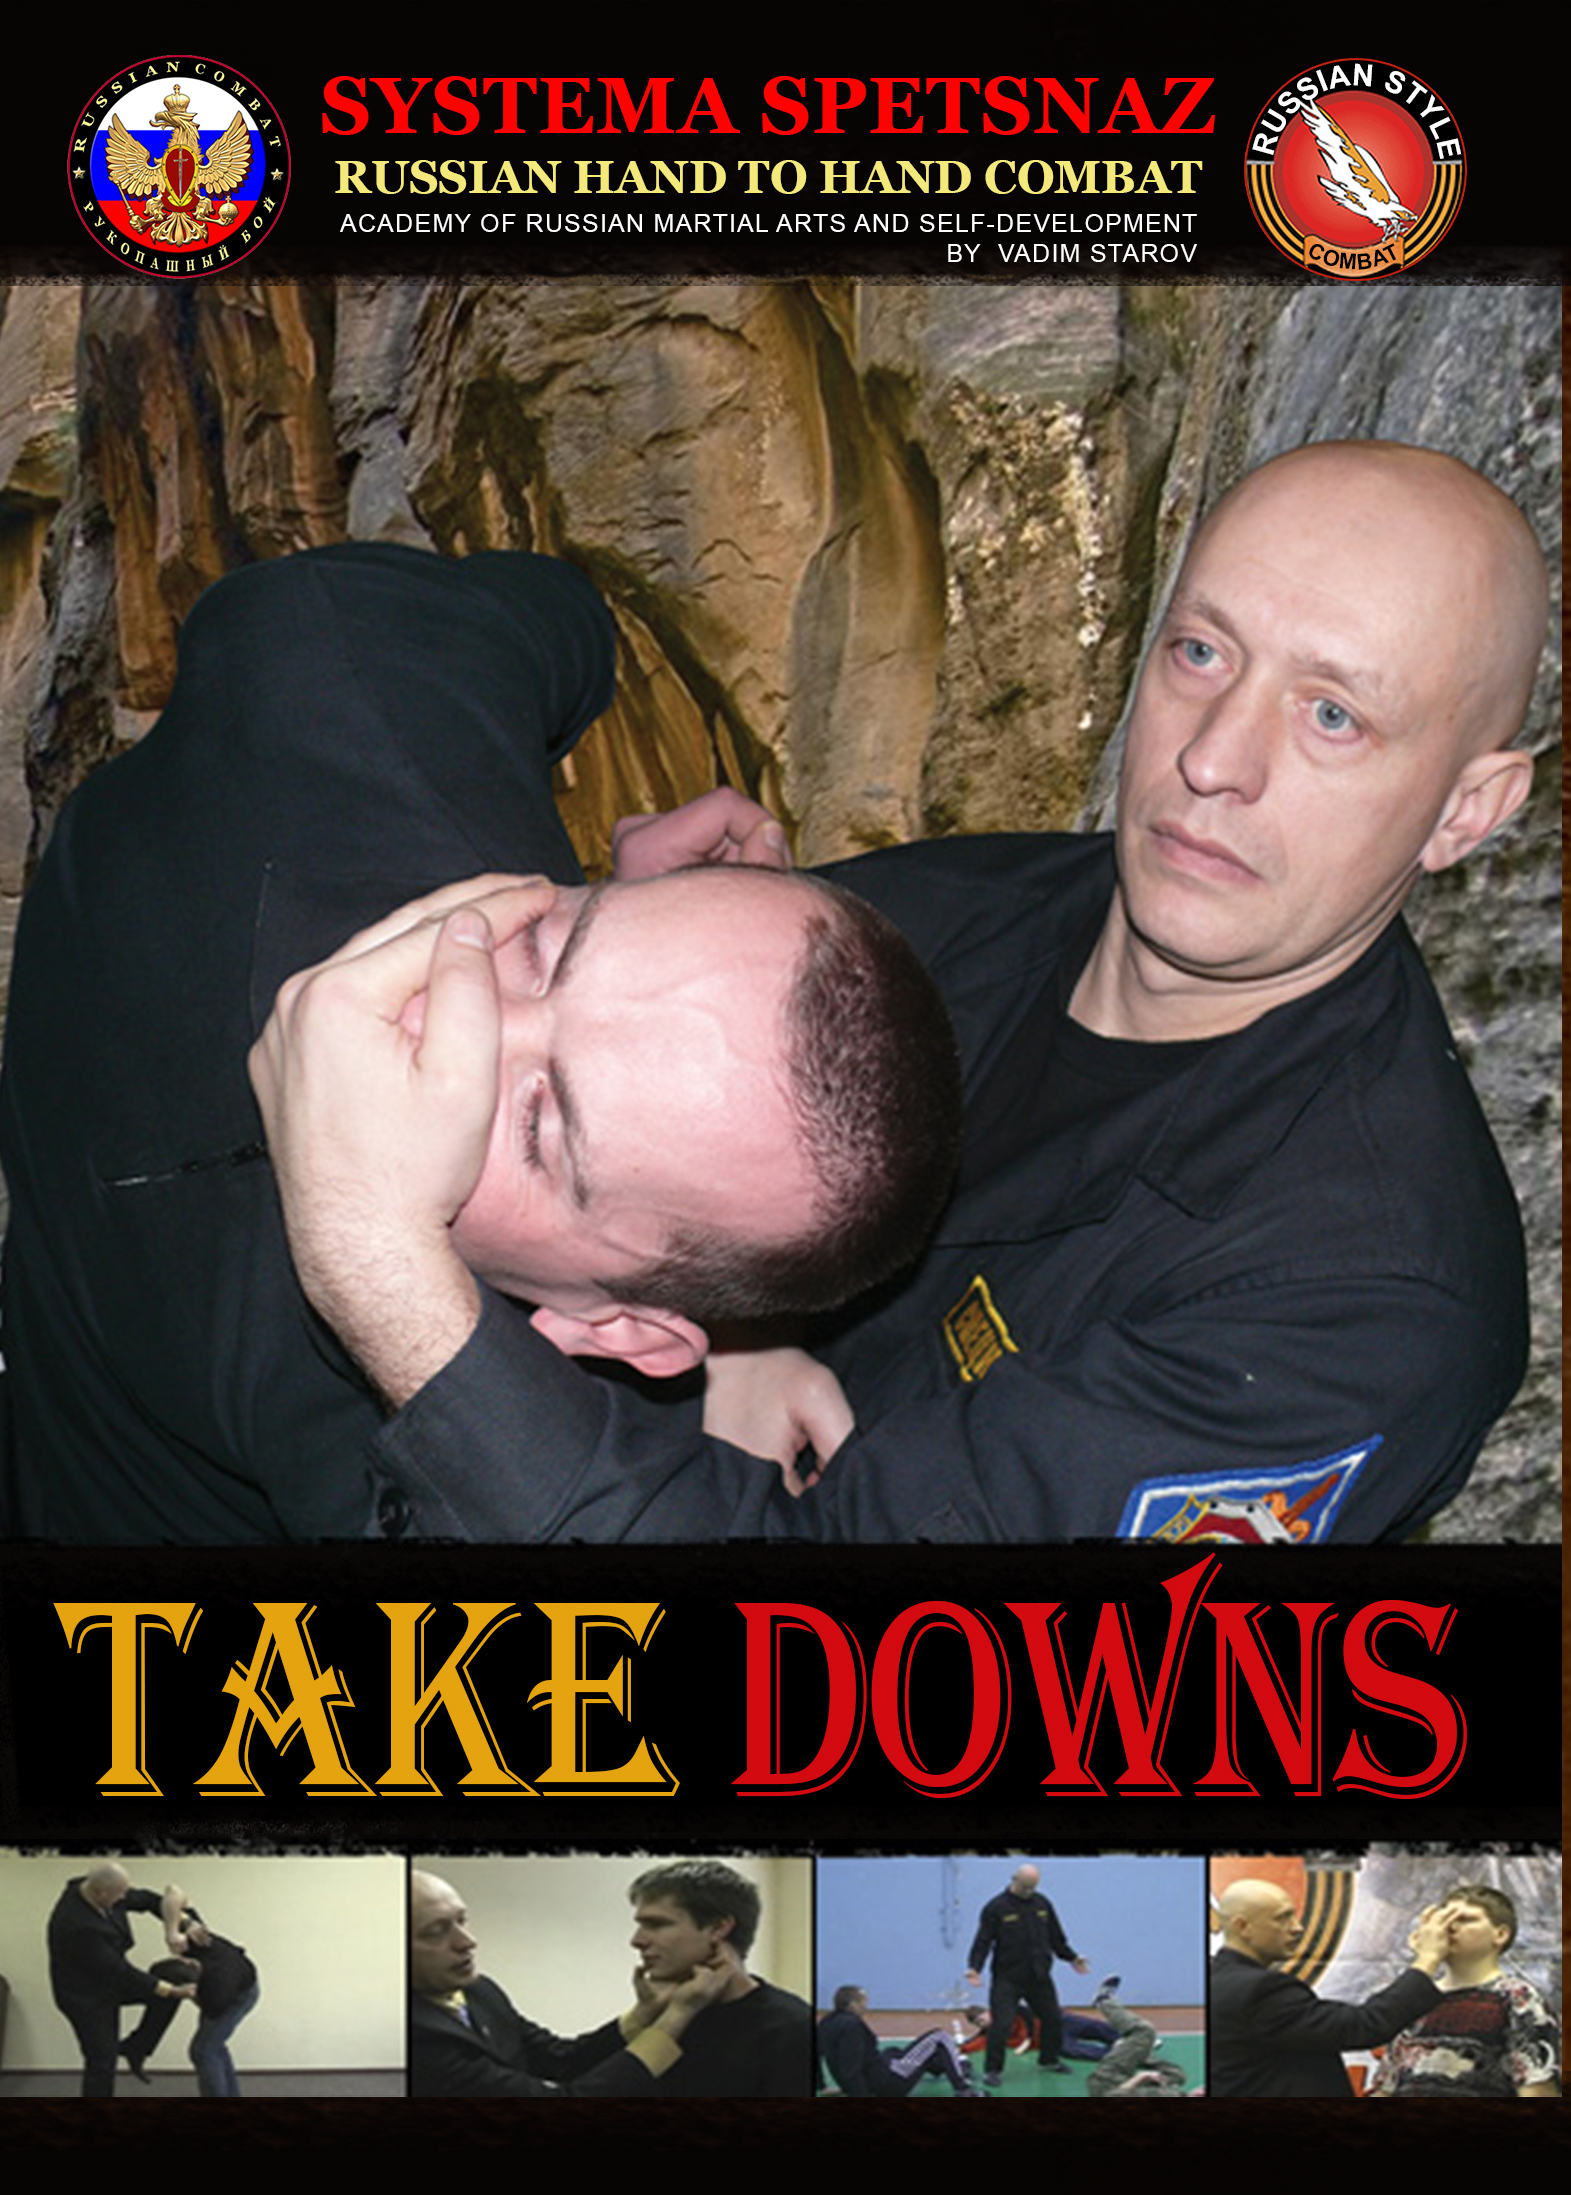 Systema Spetsnaz DVD #8 - Takedowns